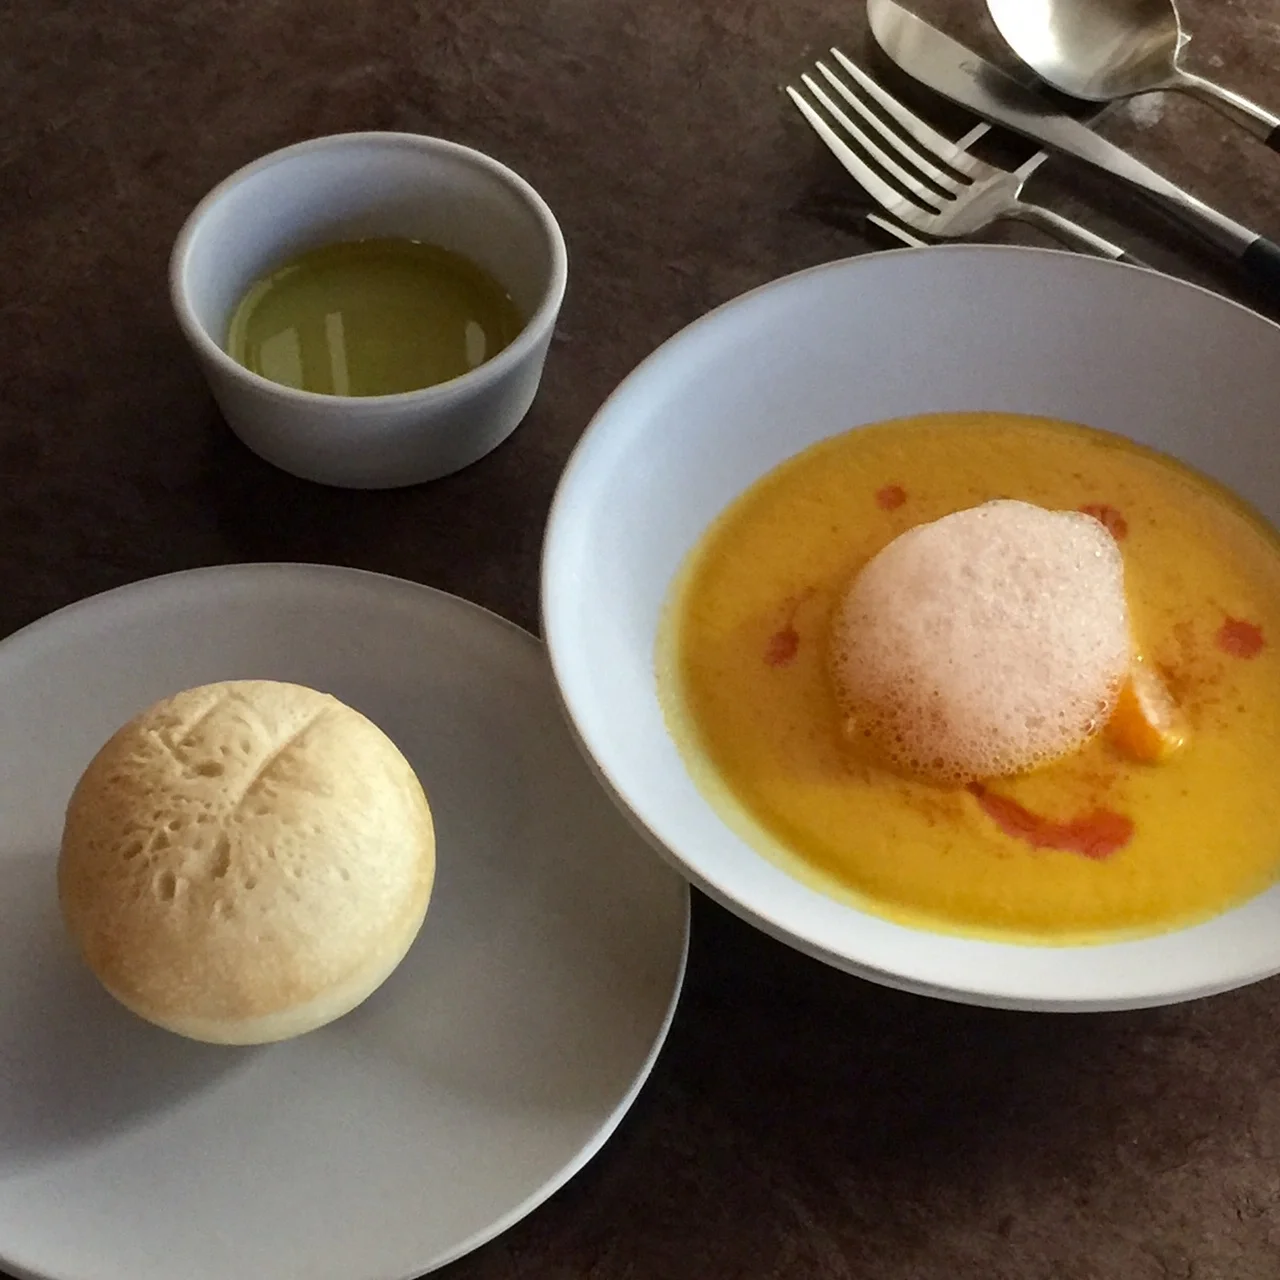 OSAJIが初となるレストランを鎌倉にオープン!